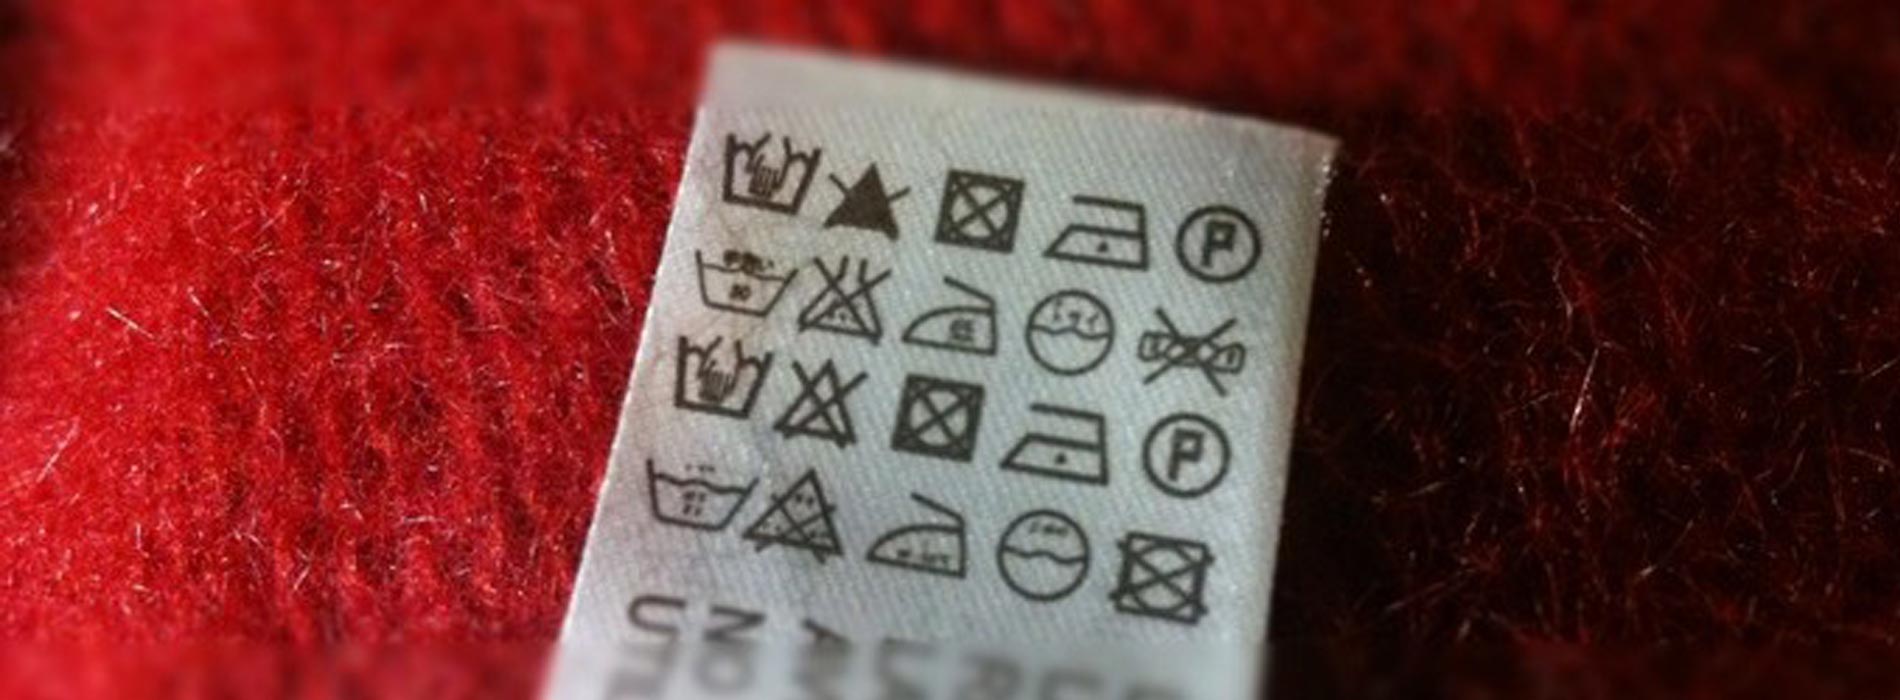 Pflegekennzeichen für die Textilreinigung bzw. chemische Reinigung.